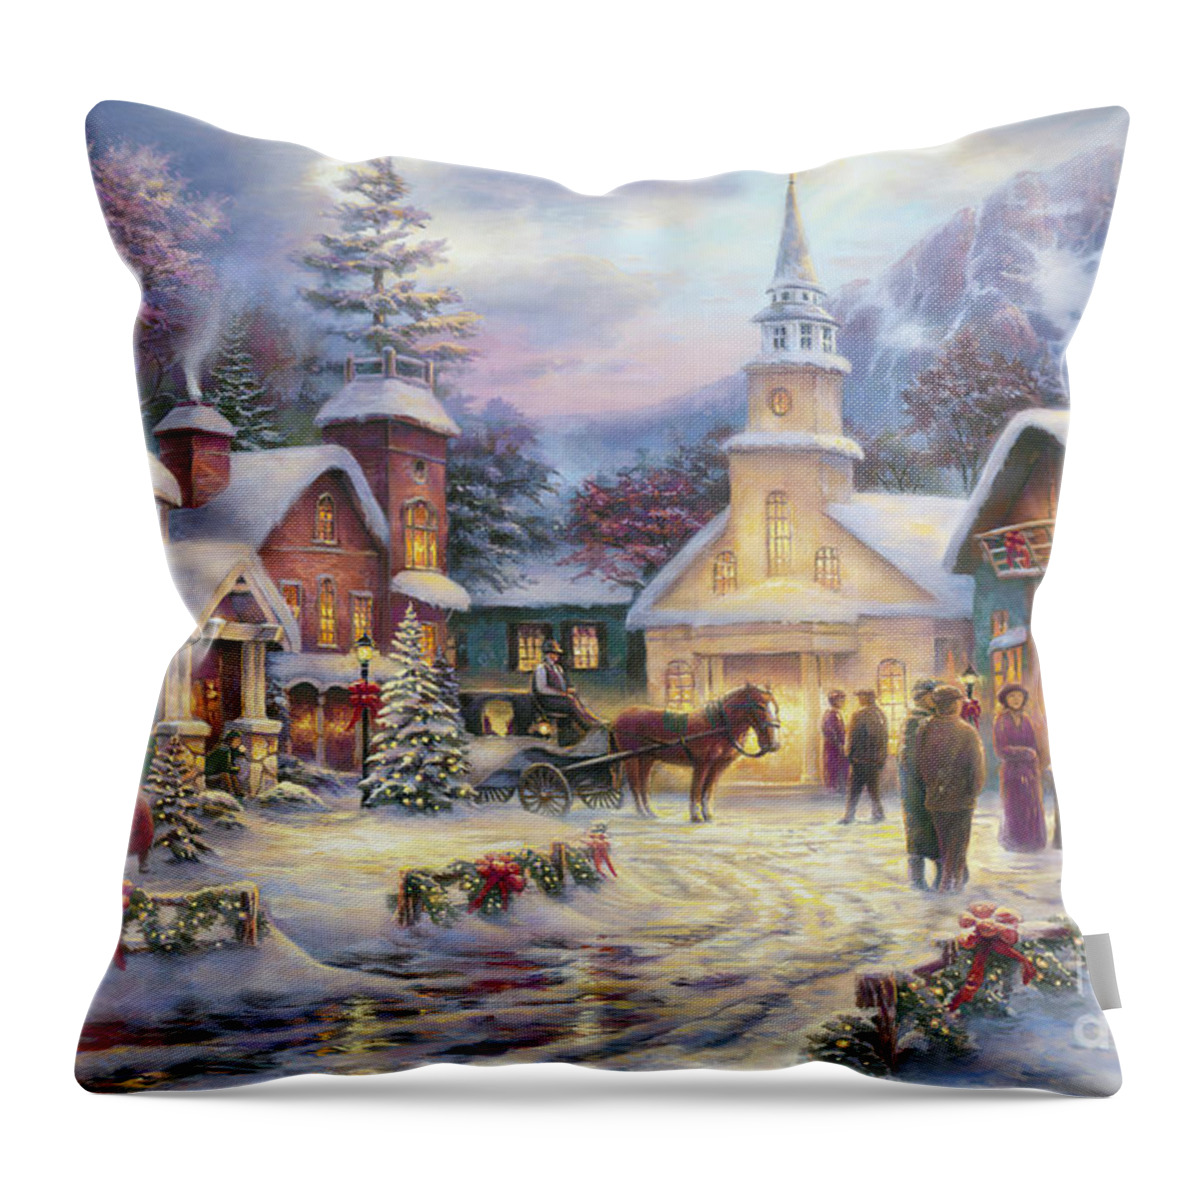 #faaadwordsbest Throw Pillow featuring the painting Faith Runs Deep by Chuck Pinson